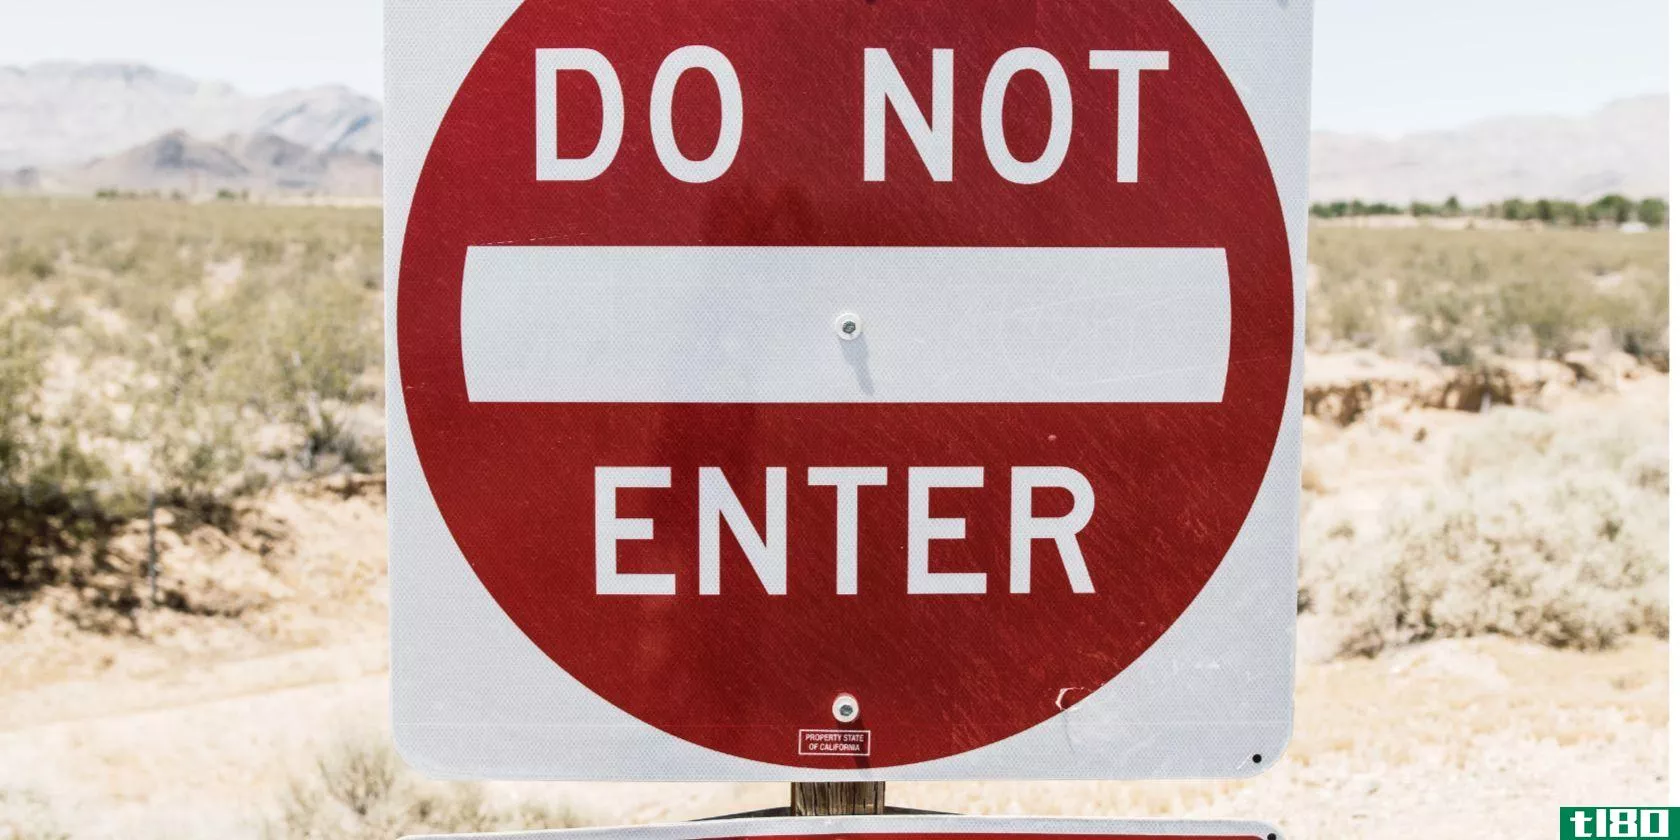 Do not enter sign in the desert